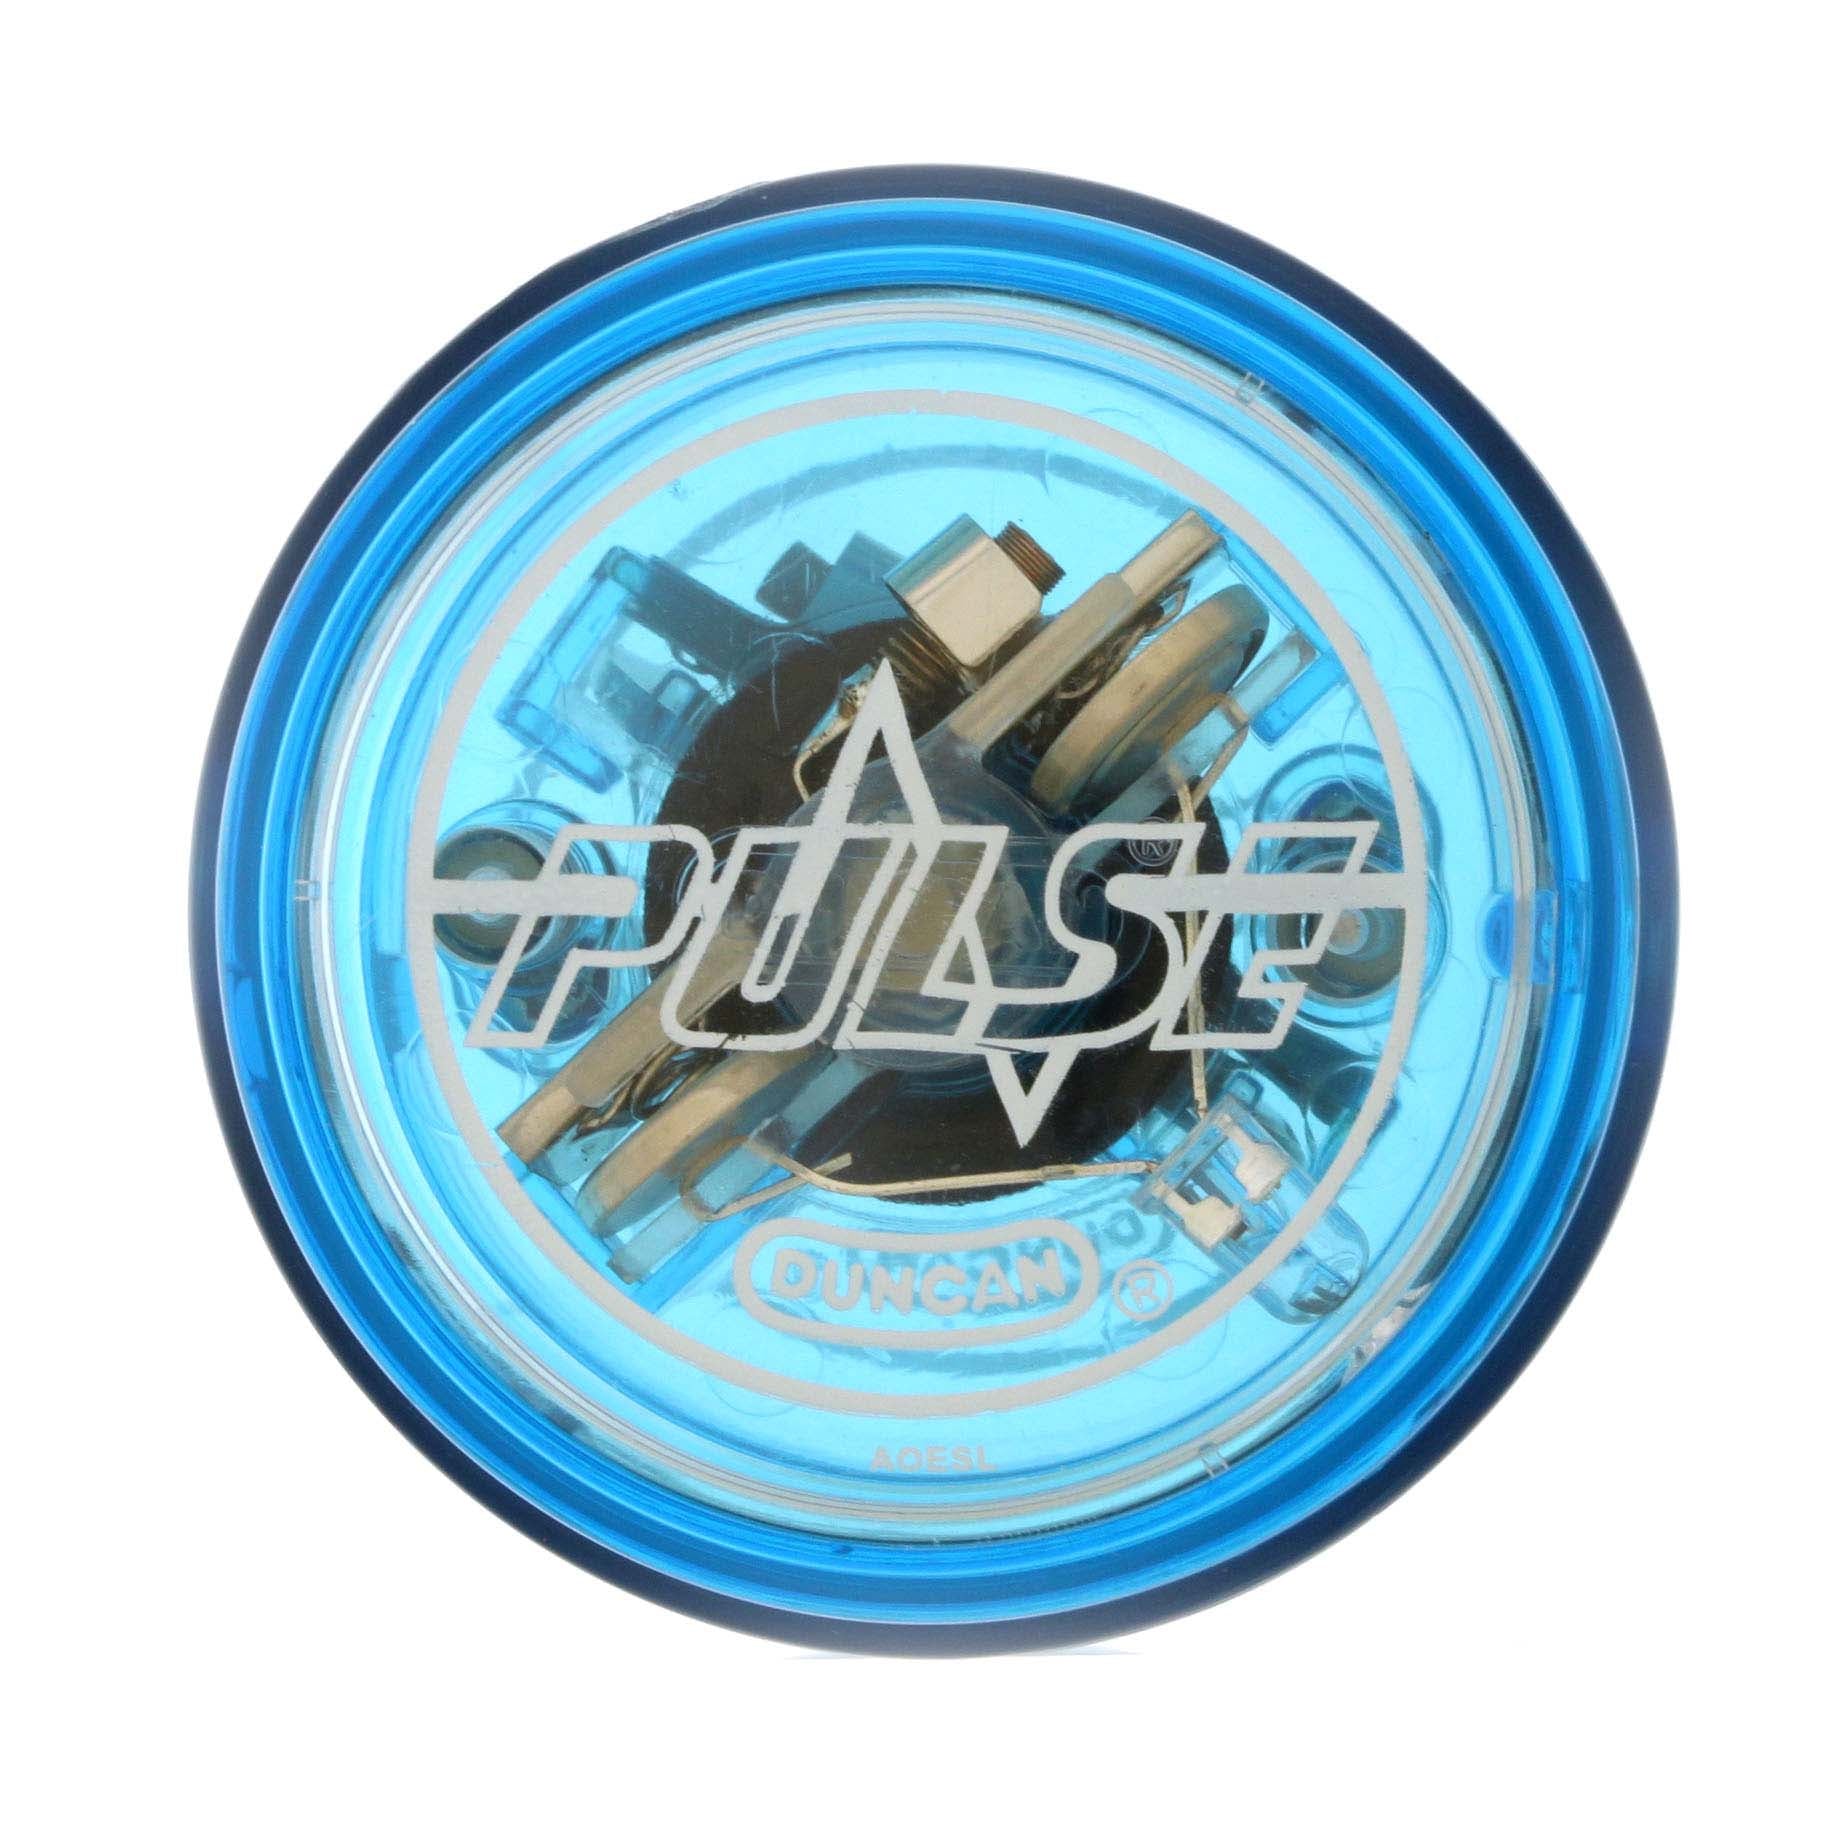 Pulse (Old) - Duncan / YO-YO STORE REWIND WORLDWIDE